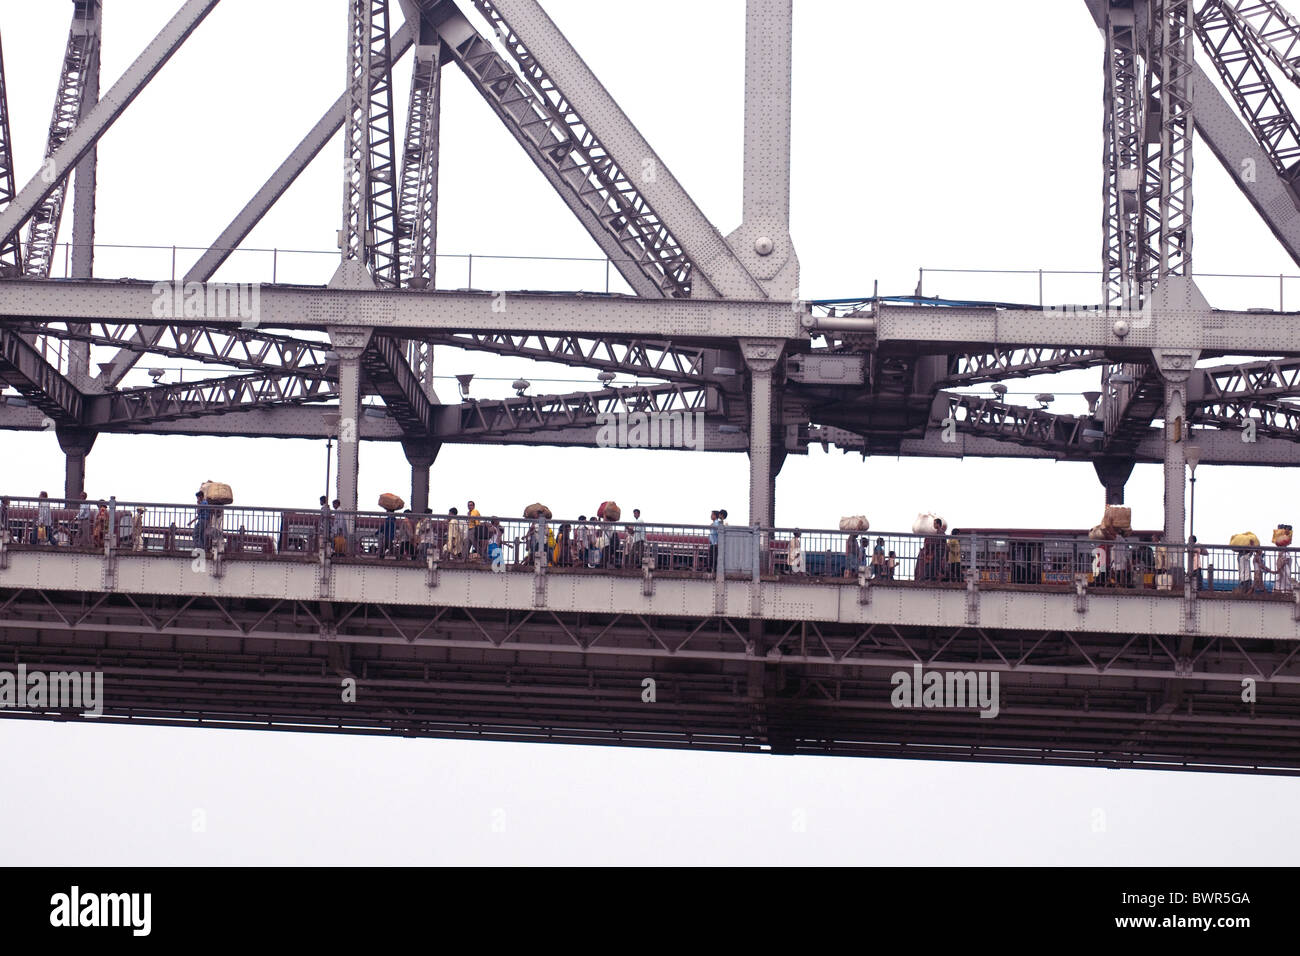 Desde el río Hooghly una sección de la línea gratuita de Kolkata Howrah bridge muestra la densidad del tráfico y los peatones Foto de stock